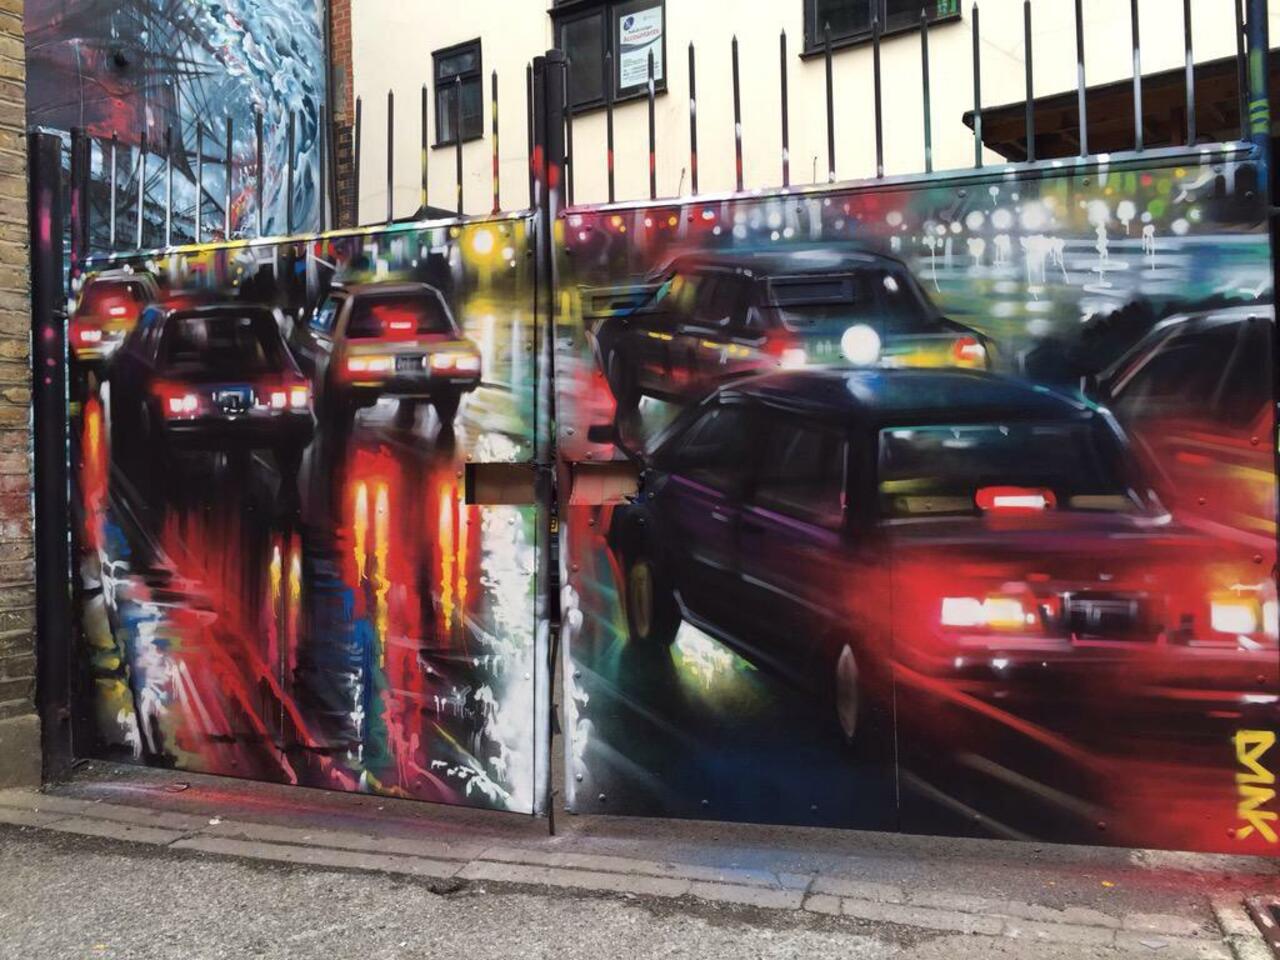 New Street Art by DanKitchener in Brick Lane London 

#art #graffiti #mural #streetart http://t.co/pgR2ZmE24j http://cur.lv/qp6mi